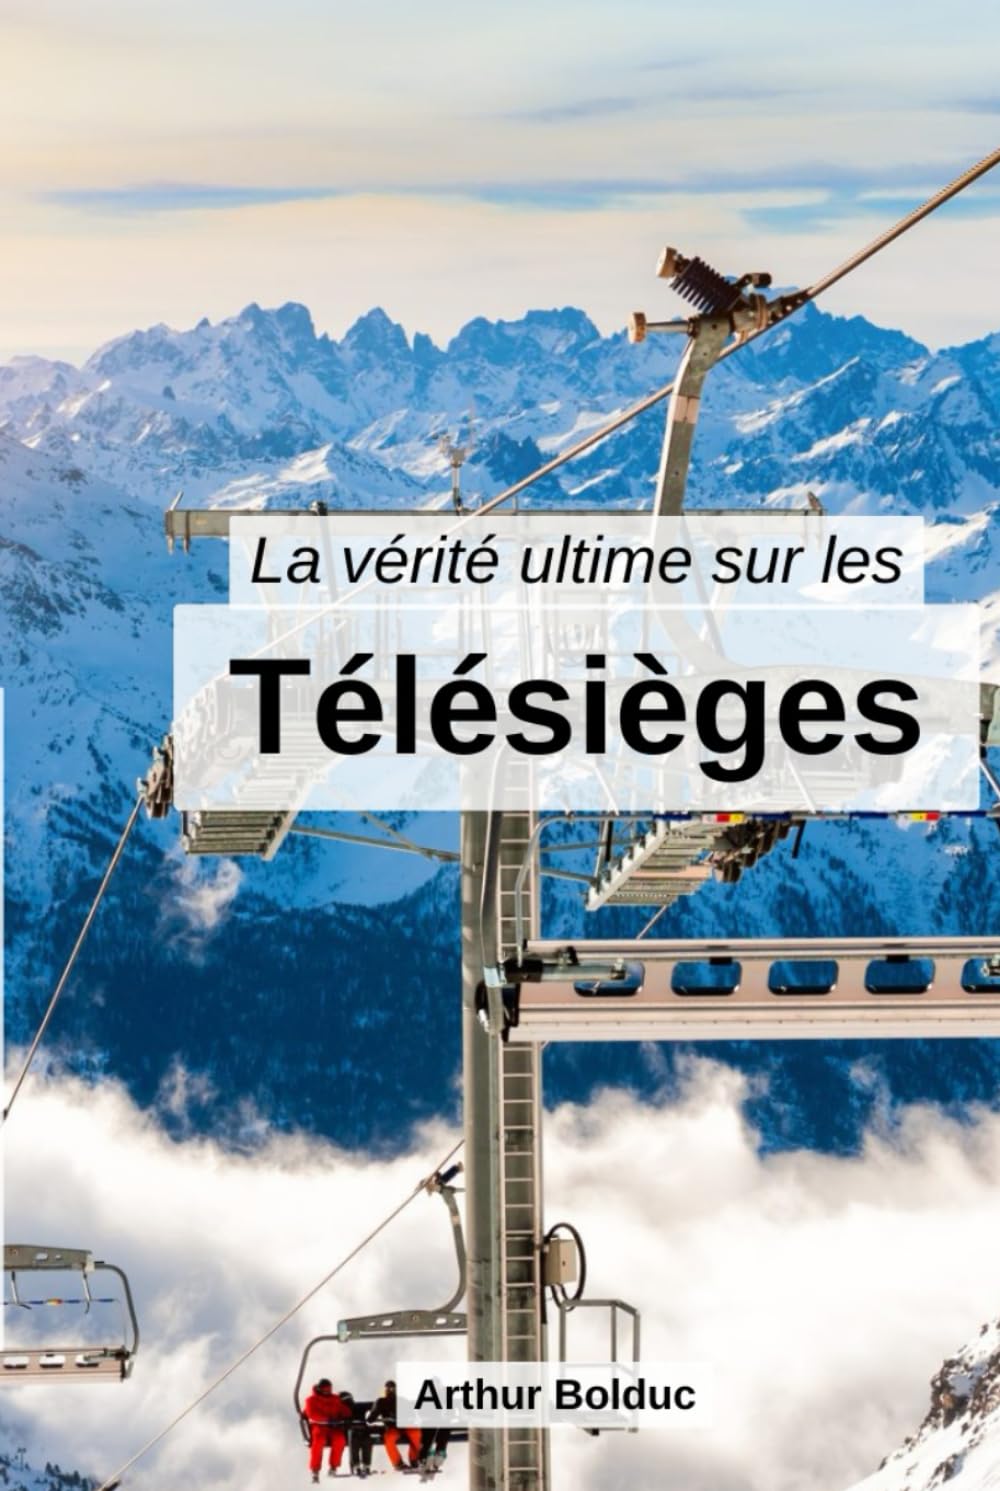 La vérité ultime sur les télésièges (French Edition)